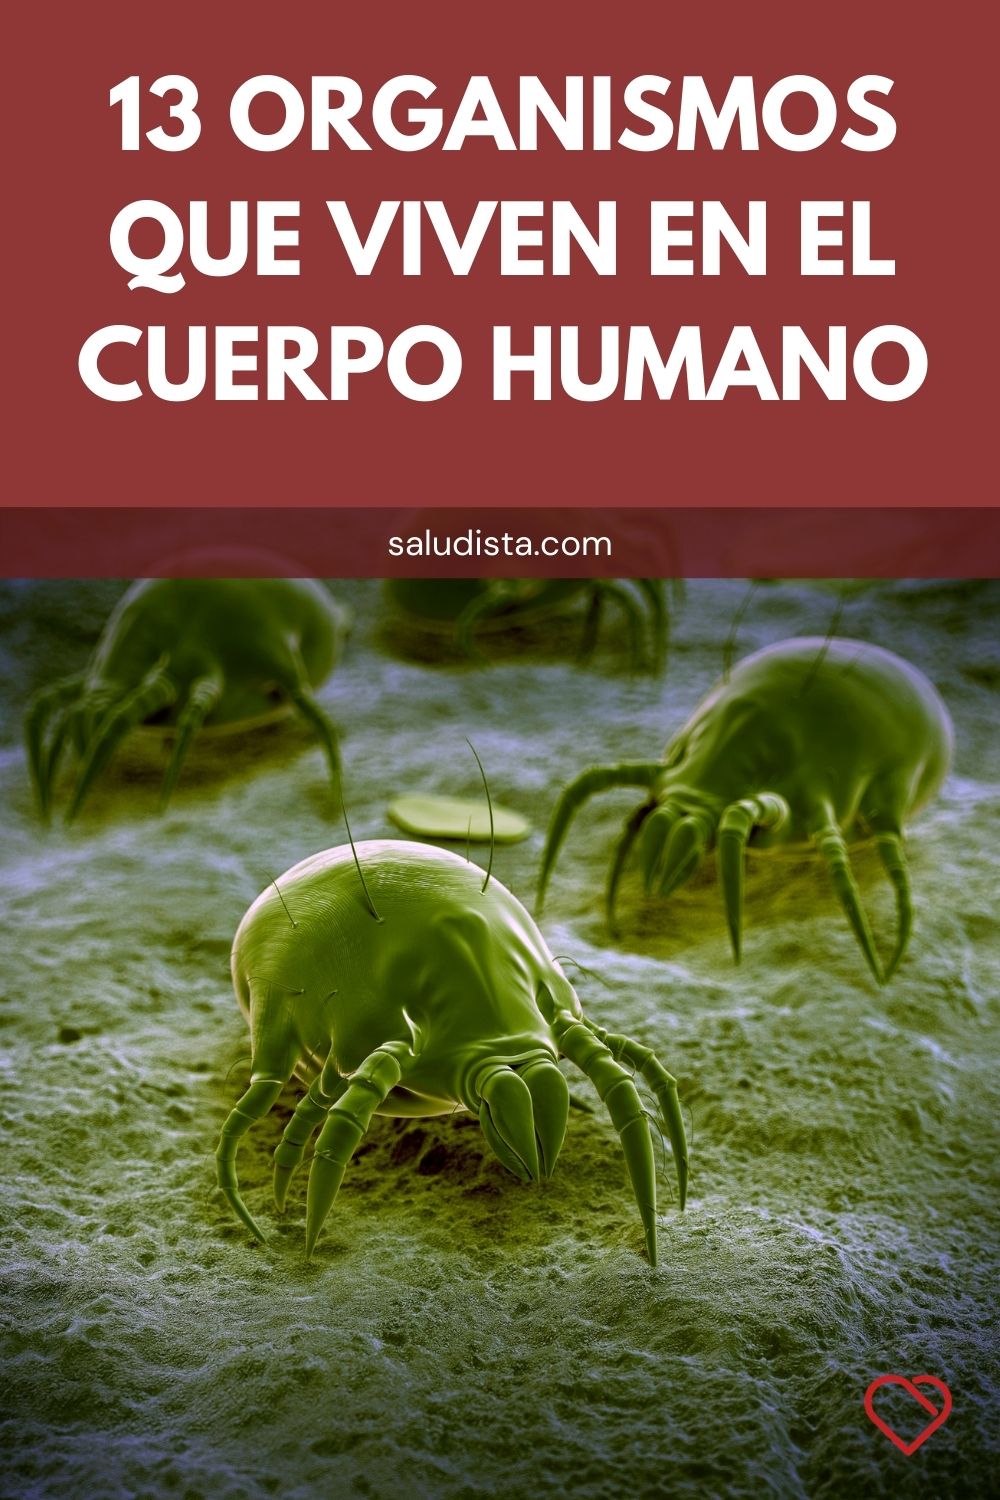 13 Organismos que viven en el cuerpo humano